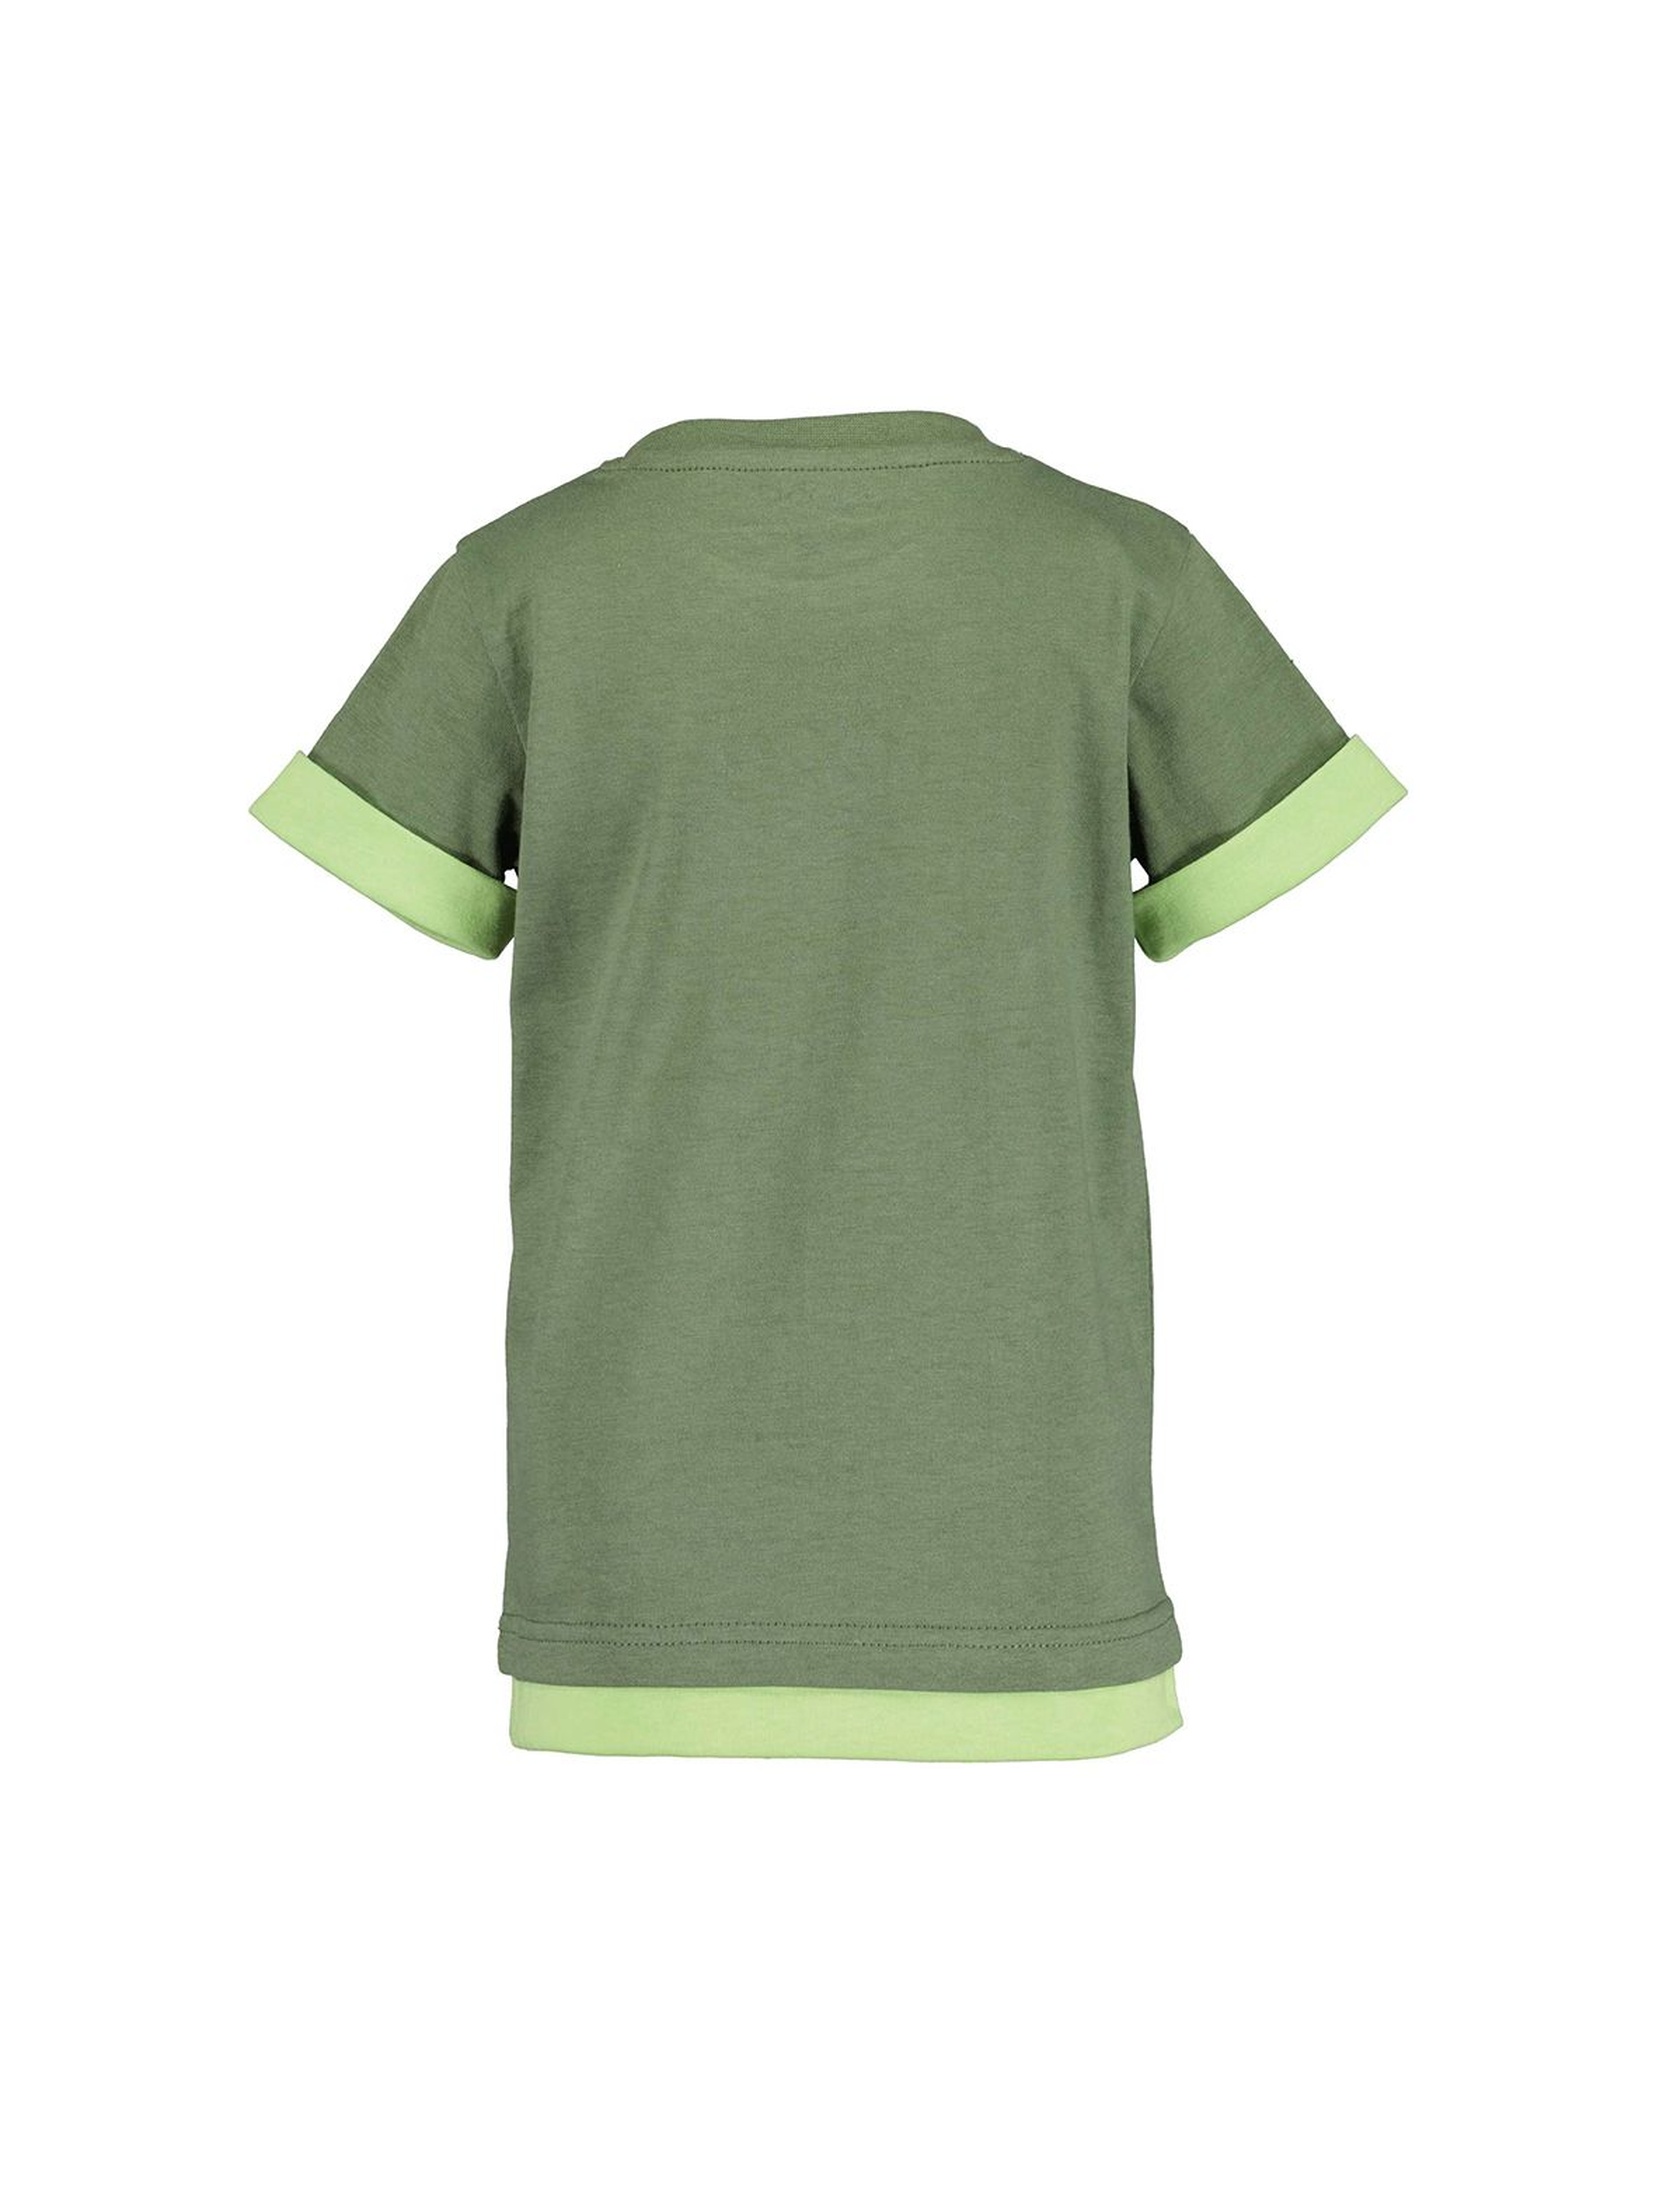 T-shirt chłopięcy z miękkim nadrukiem - zielony